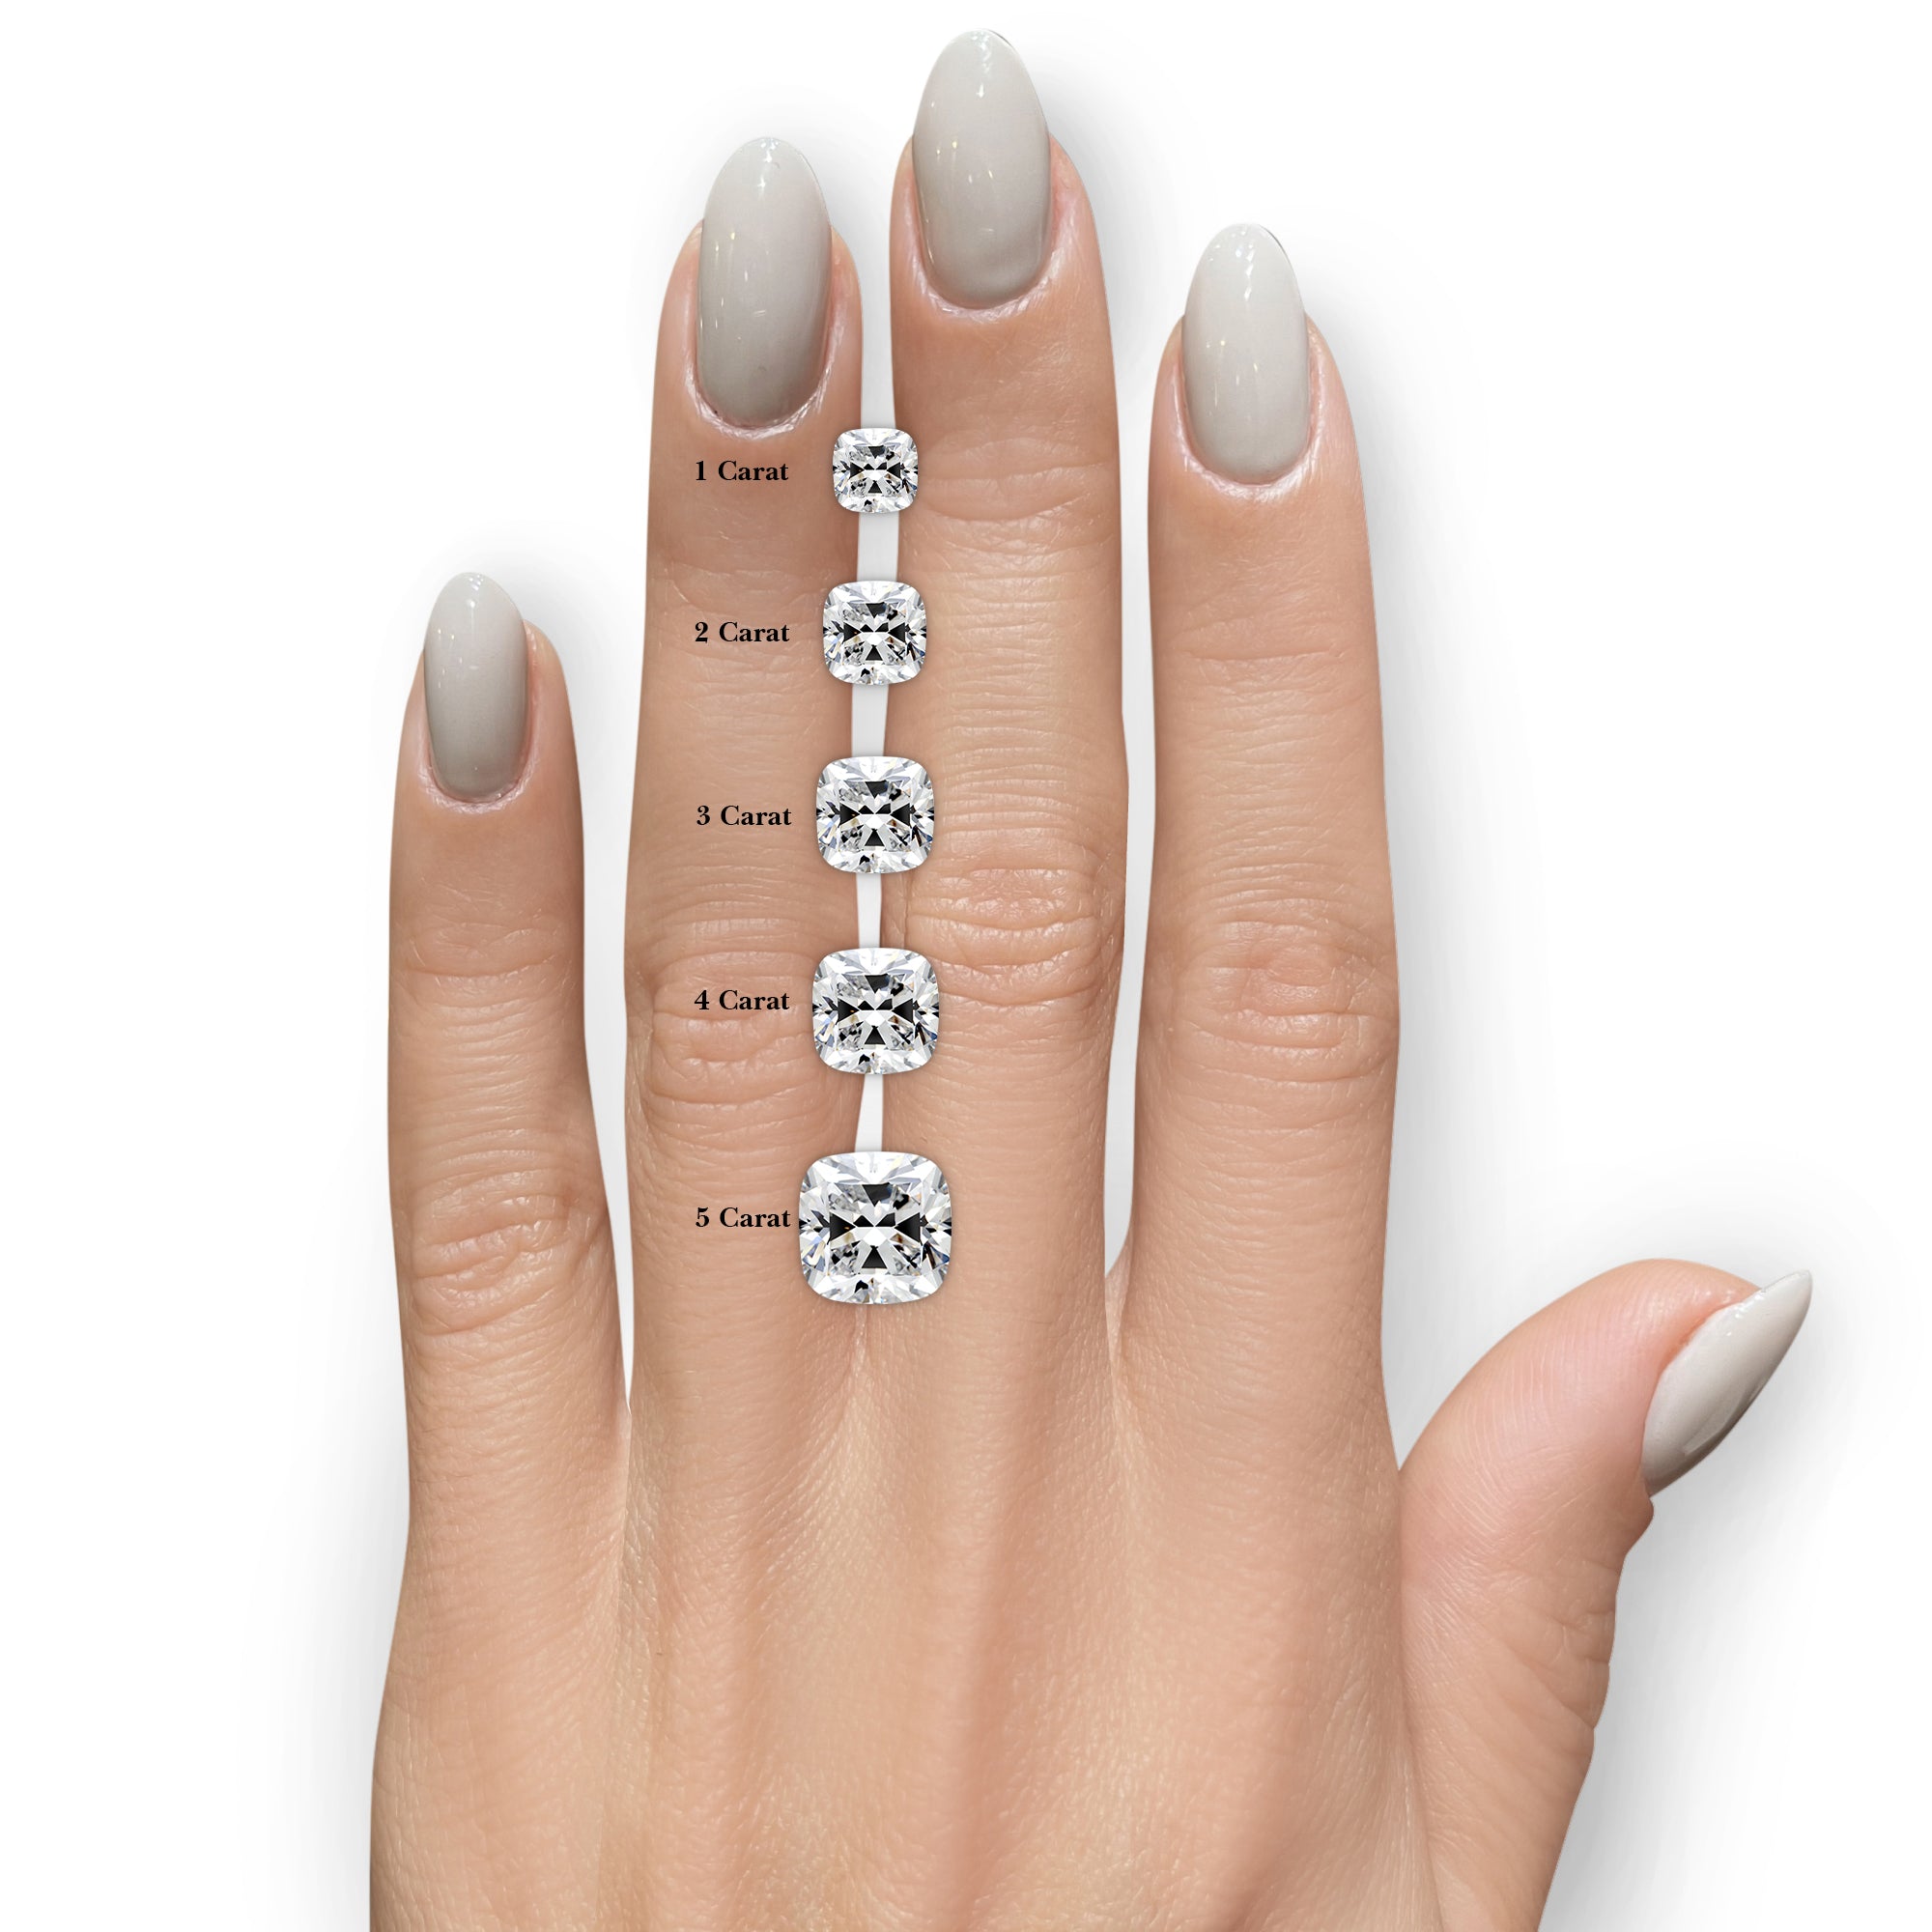 Quinn Moissanite & Diamonds Ring -18K White Gold